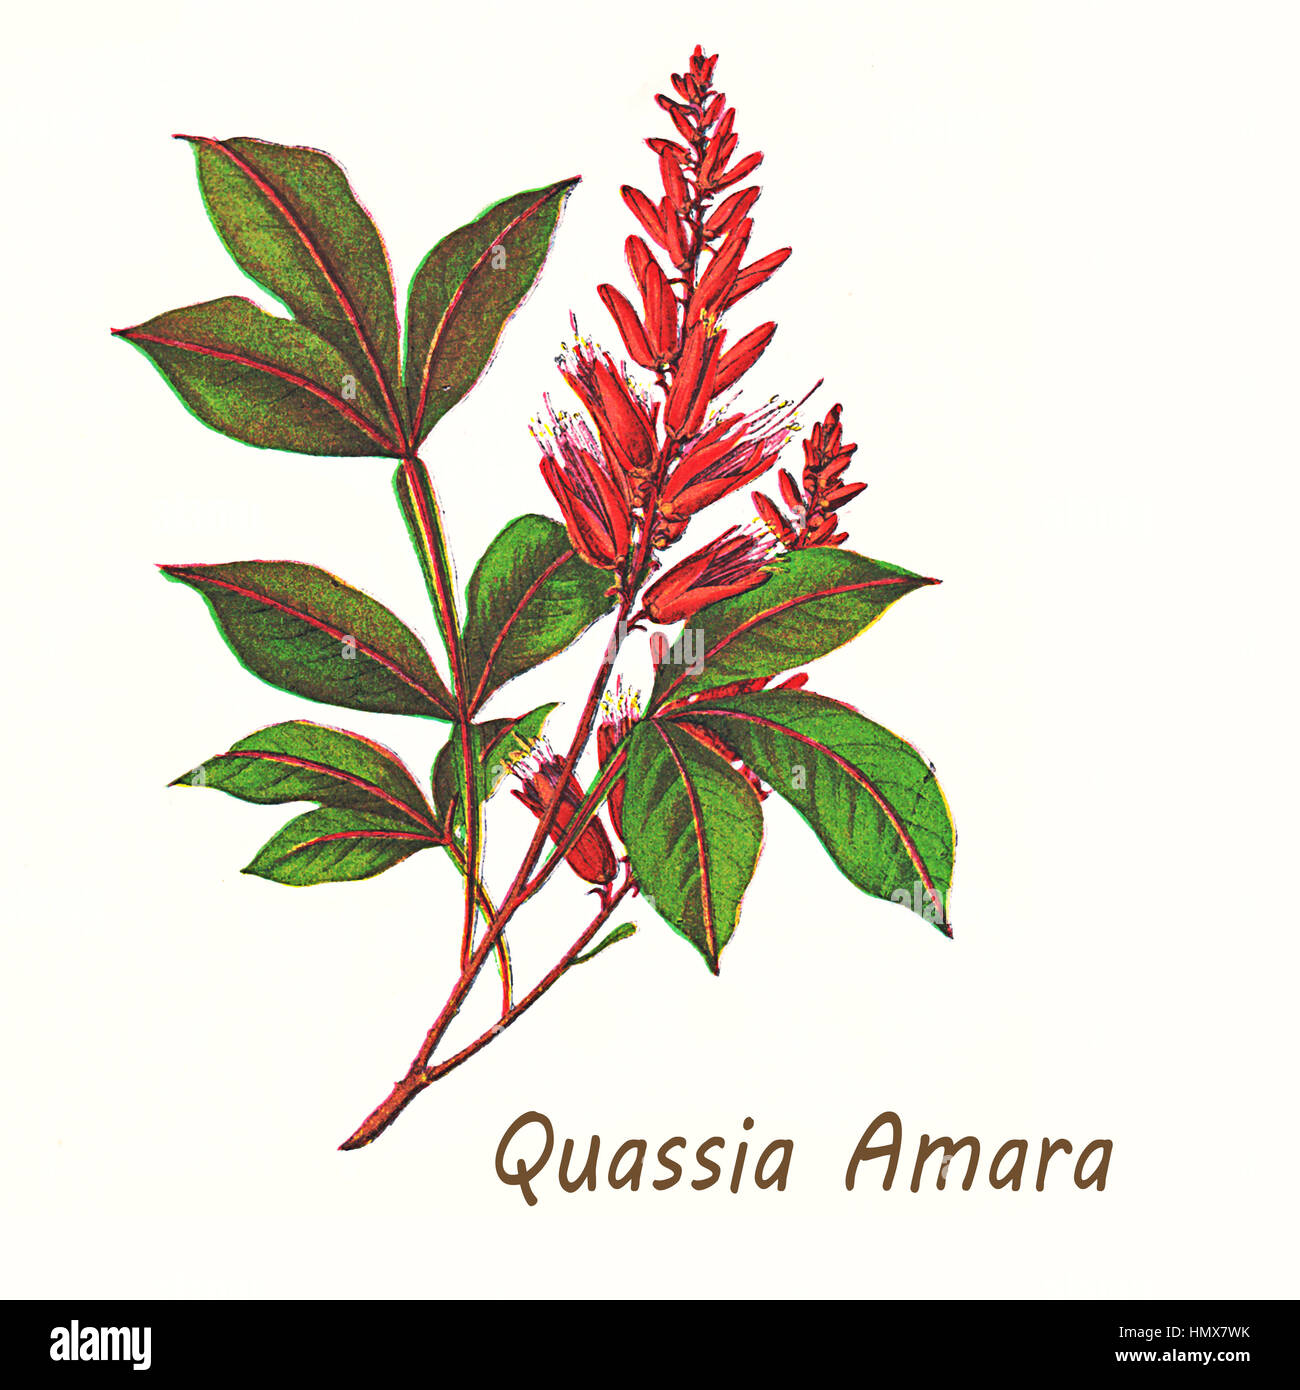 Vintage illustrazione di Quassia amara, un arbusto con luminosi fiori di colore rosso utilizzato come insetticida, nella medicina tradizionale e come additivo nell'industria alimentare per il suo sapore amaro. Foto Stock